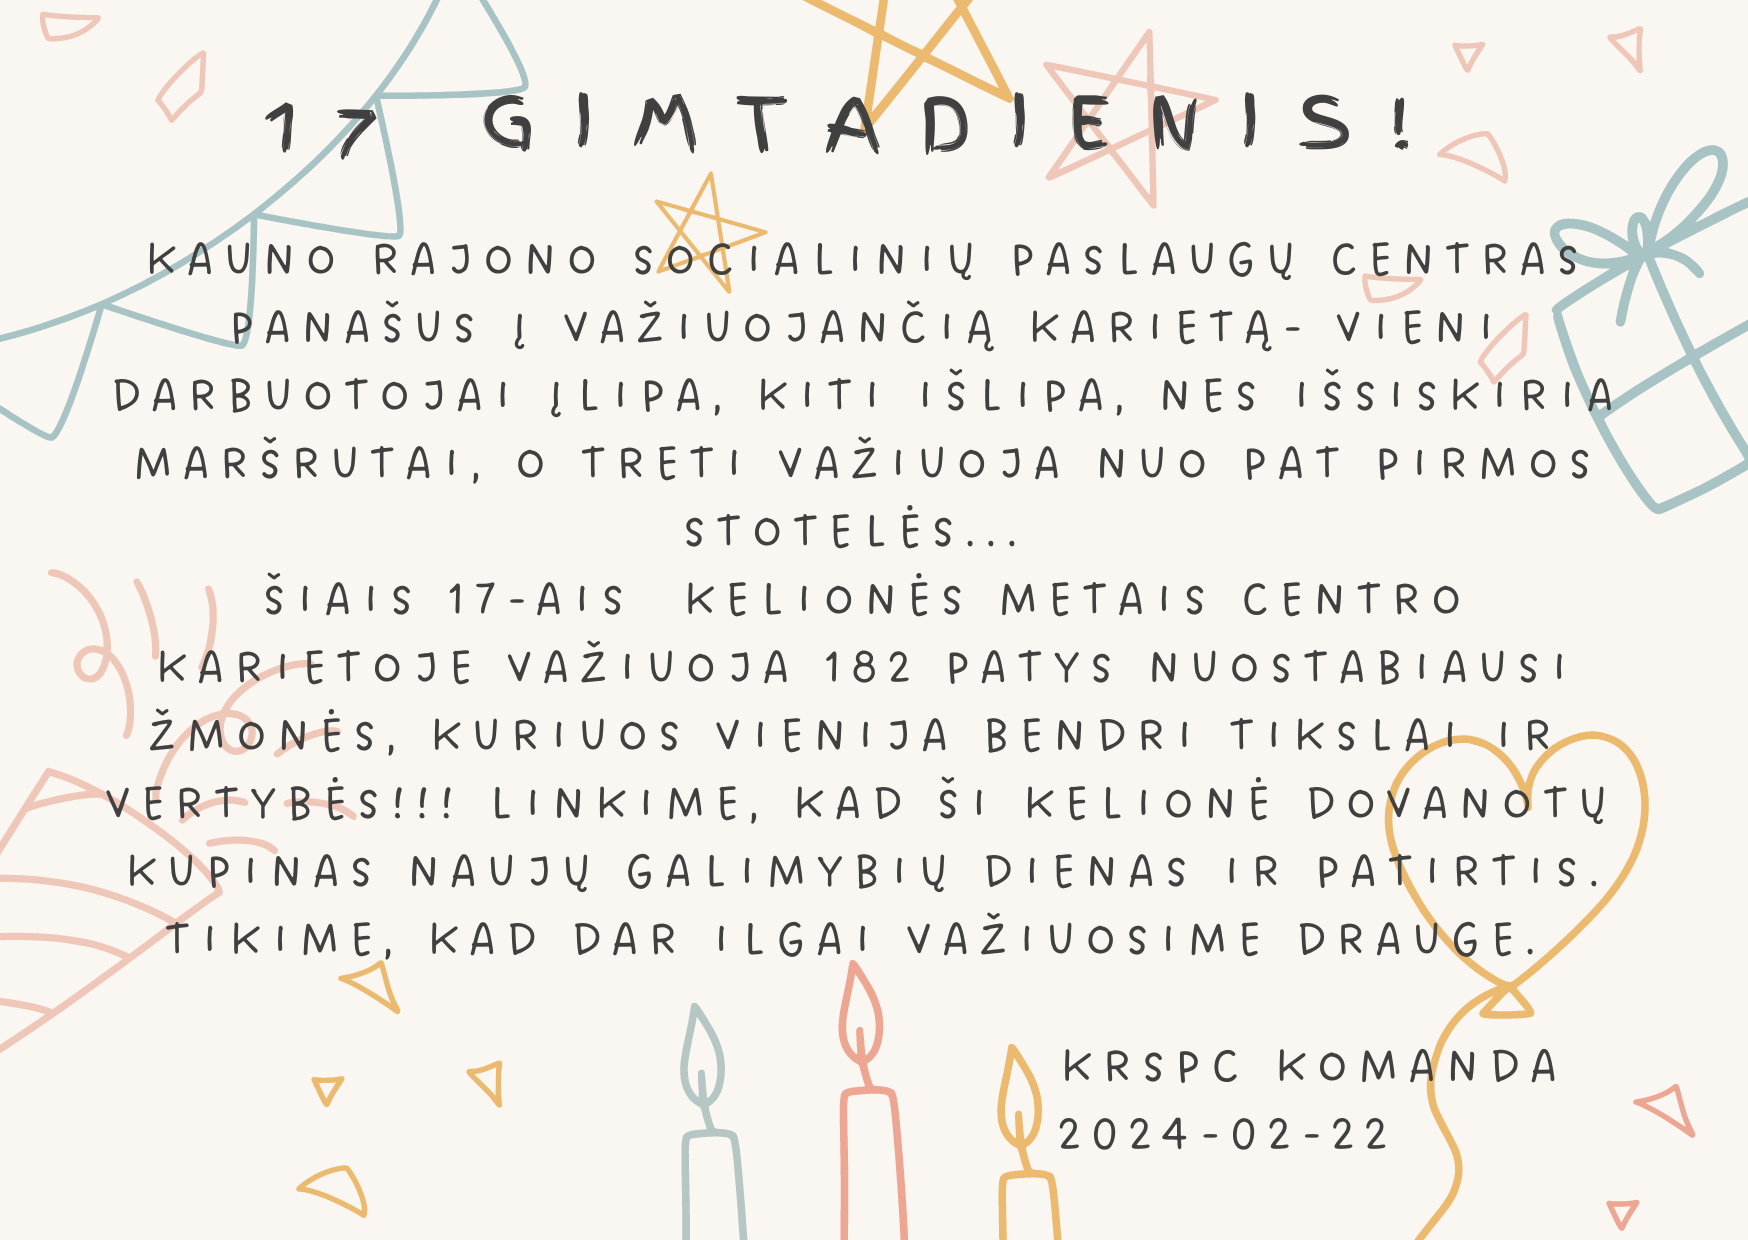 Kauno rajono socialinių paslaugų centras švenčia 17  veiklos sukaktį